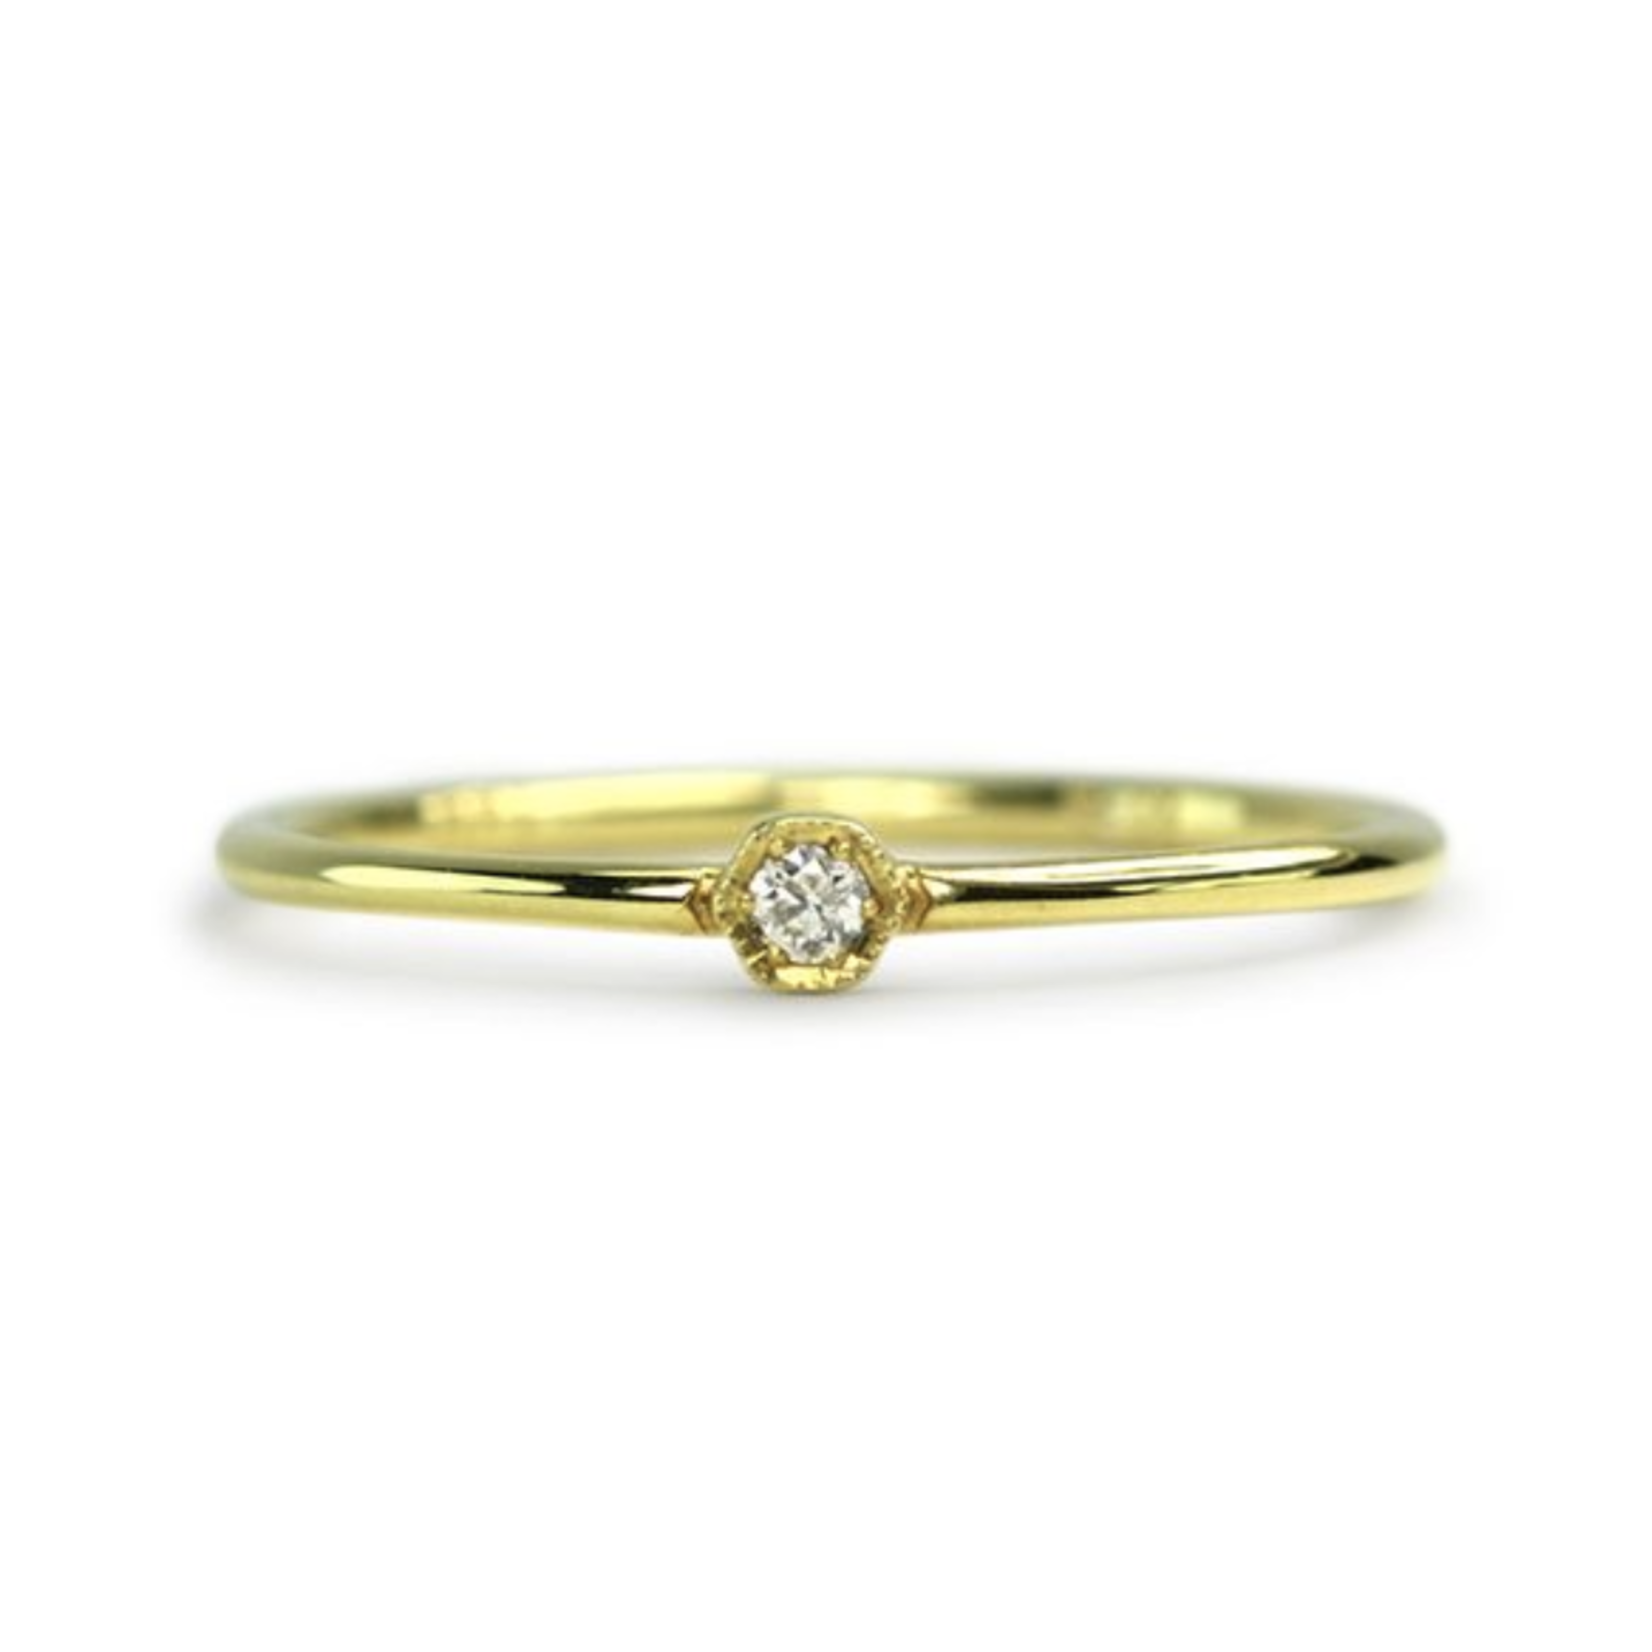 ILA Laney Diamond Ring Size 6.5 - 14KY